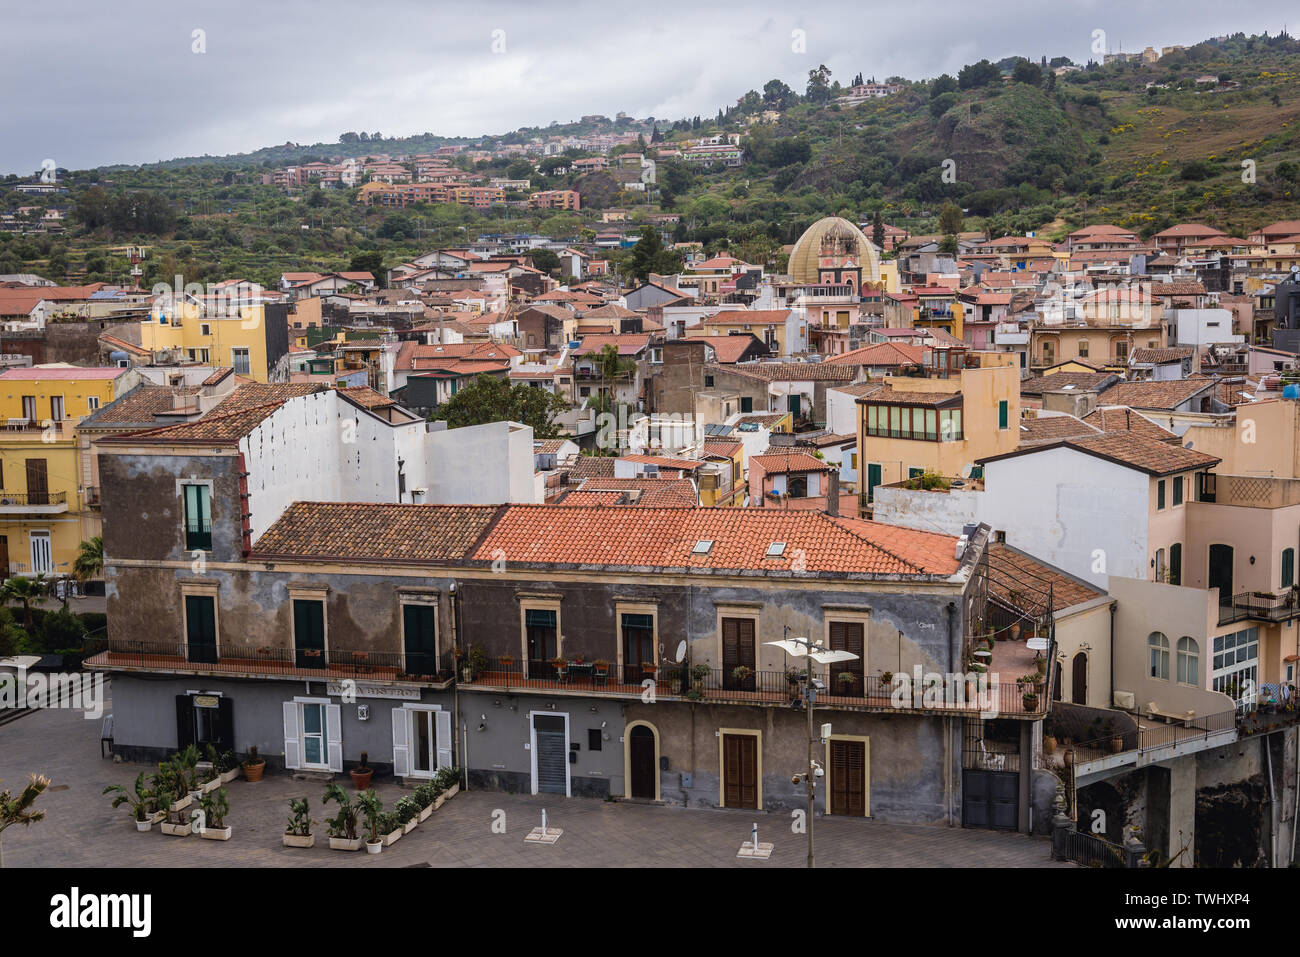 Vista aerea dal castello di Aci Castello comune nella città metropolitana di Catania sulla isola di Sicilia in Italia Foto Stock